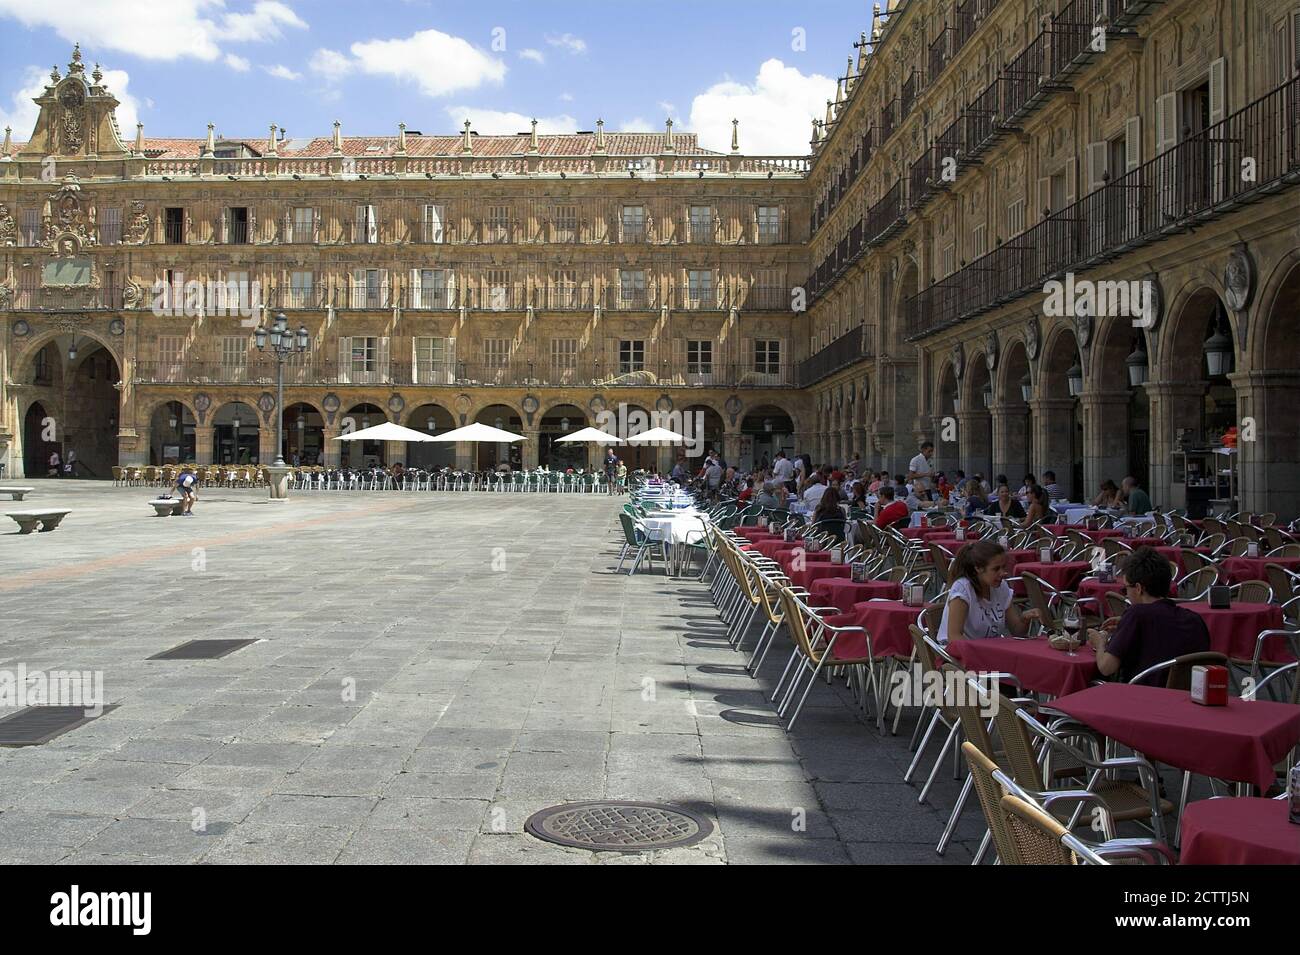 Salamanca España Hiszpania, Spain, Spanien, Restaurant tables set in the shade on the Plaza Mayor; Restauranttische stehen im Schatten der Plaza Mayor Stock Photo